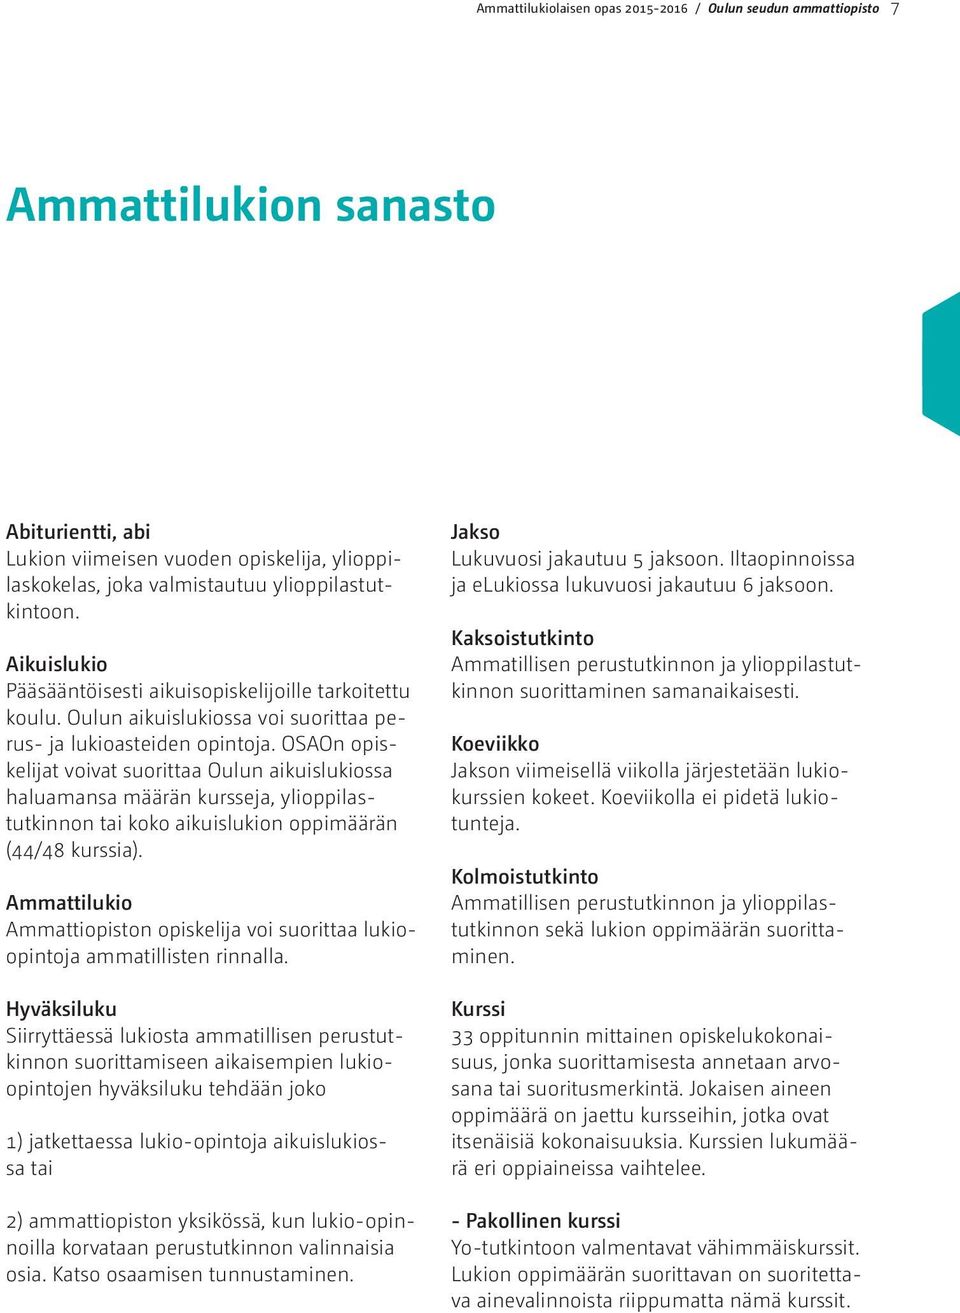 OSAOn opiskelijat voivat suorittaa Oulun aikuislukiossa haluamansa määrän kursseja, ylioppilastutkinnon tai koko aikuislukion oppimäärän (44/48 kurssia).